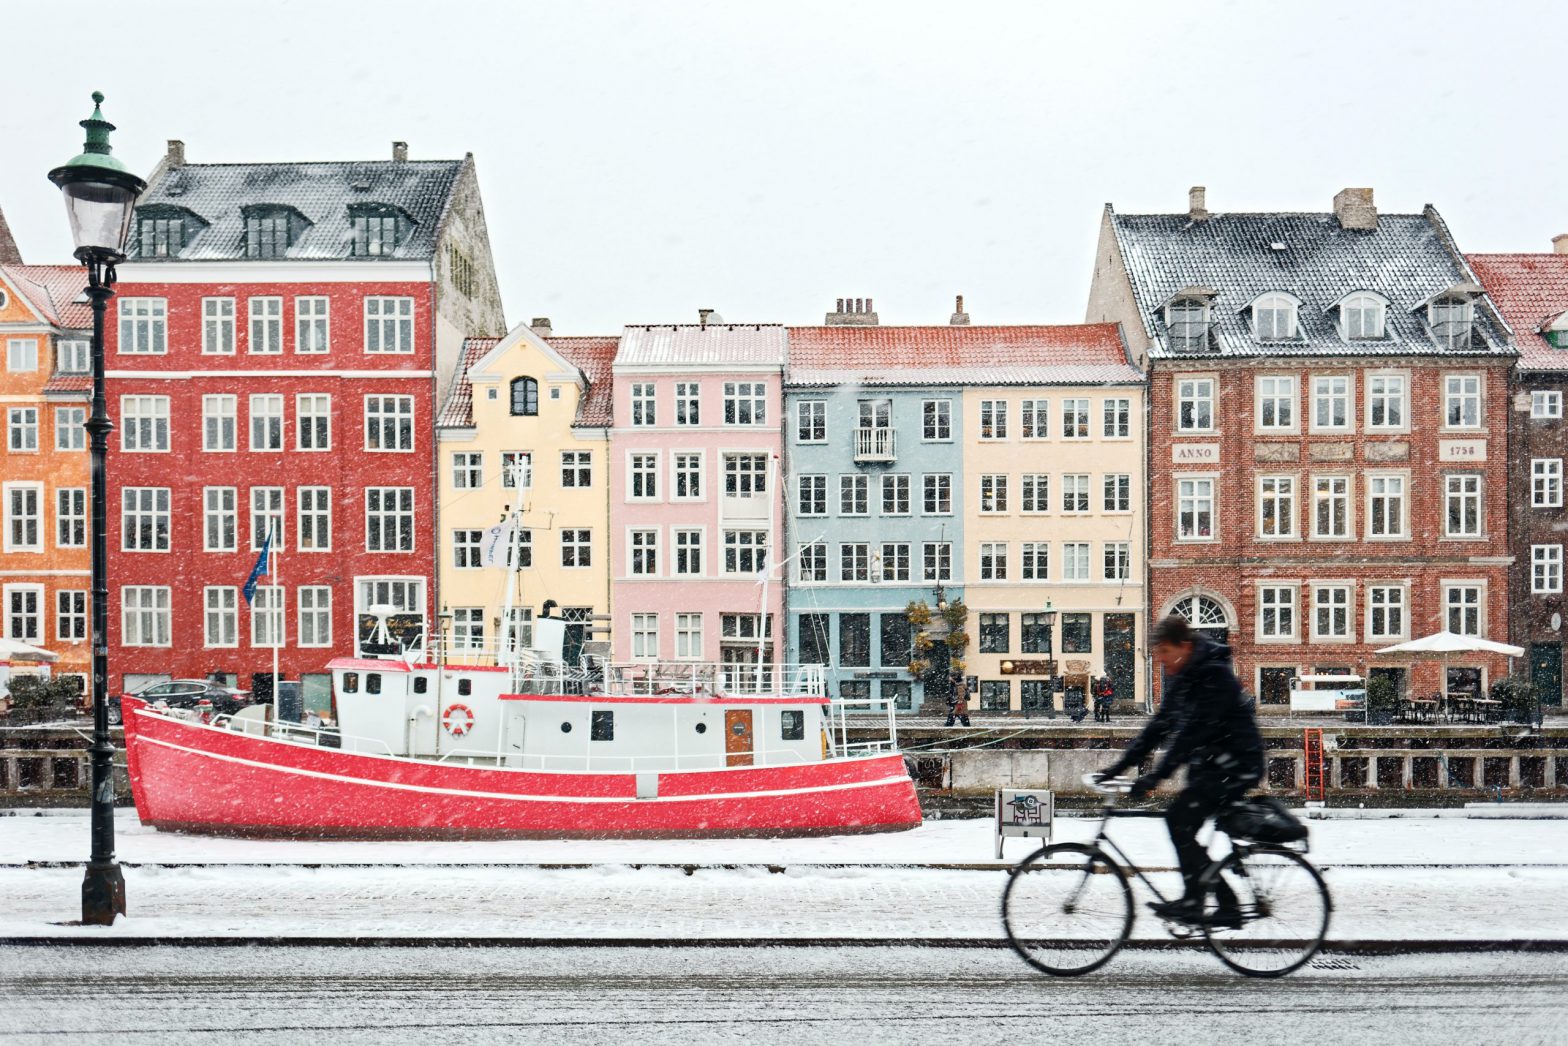 Auslandskrankenversicherung für Expats in Dänemark